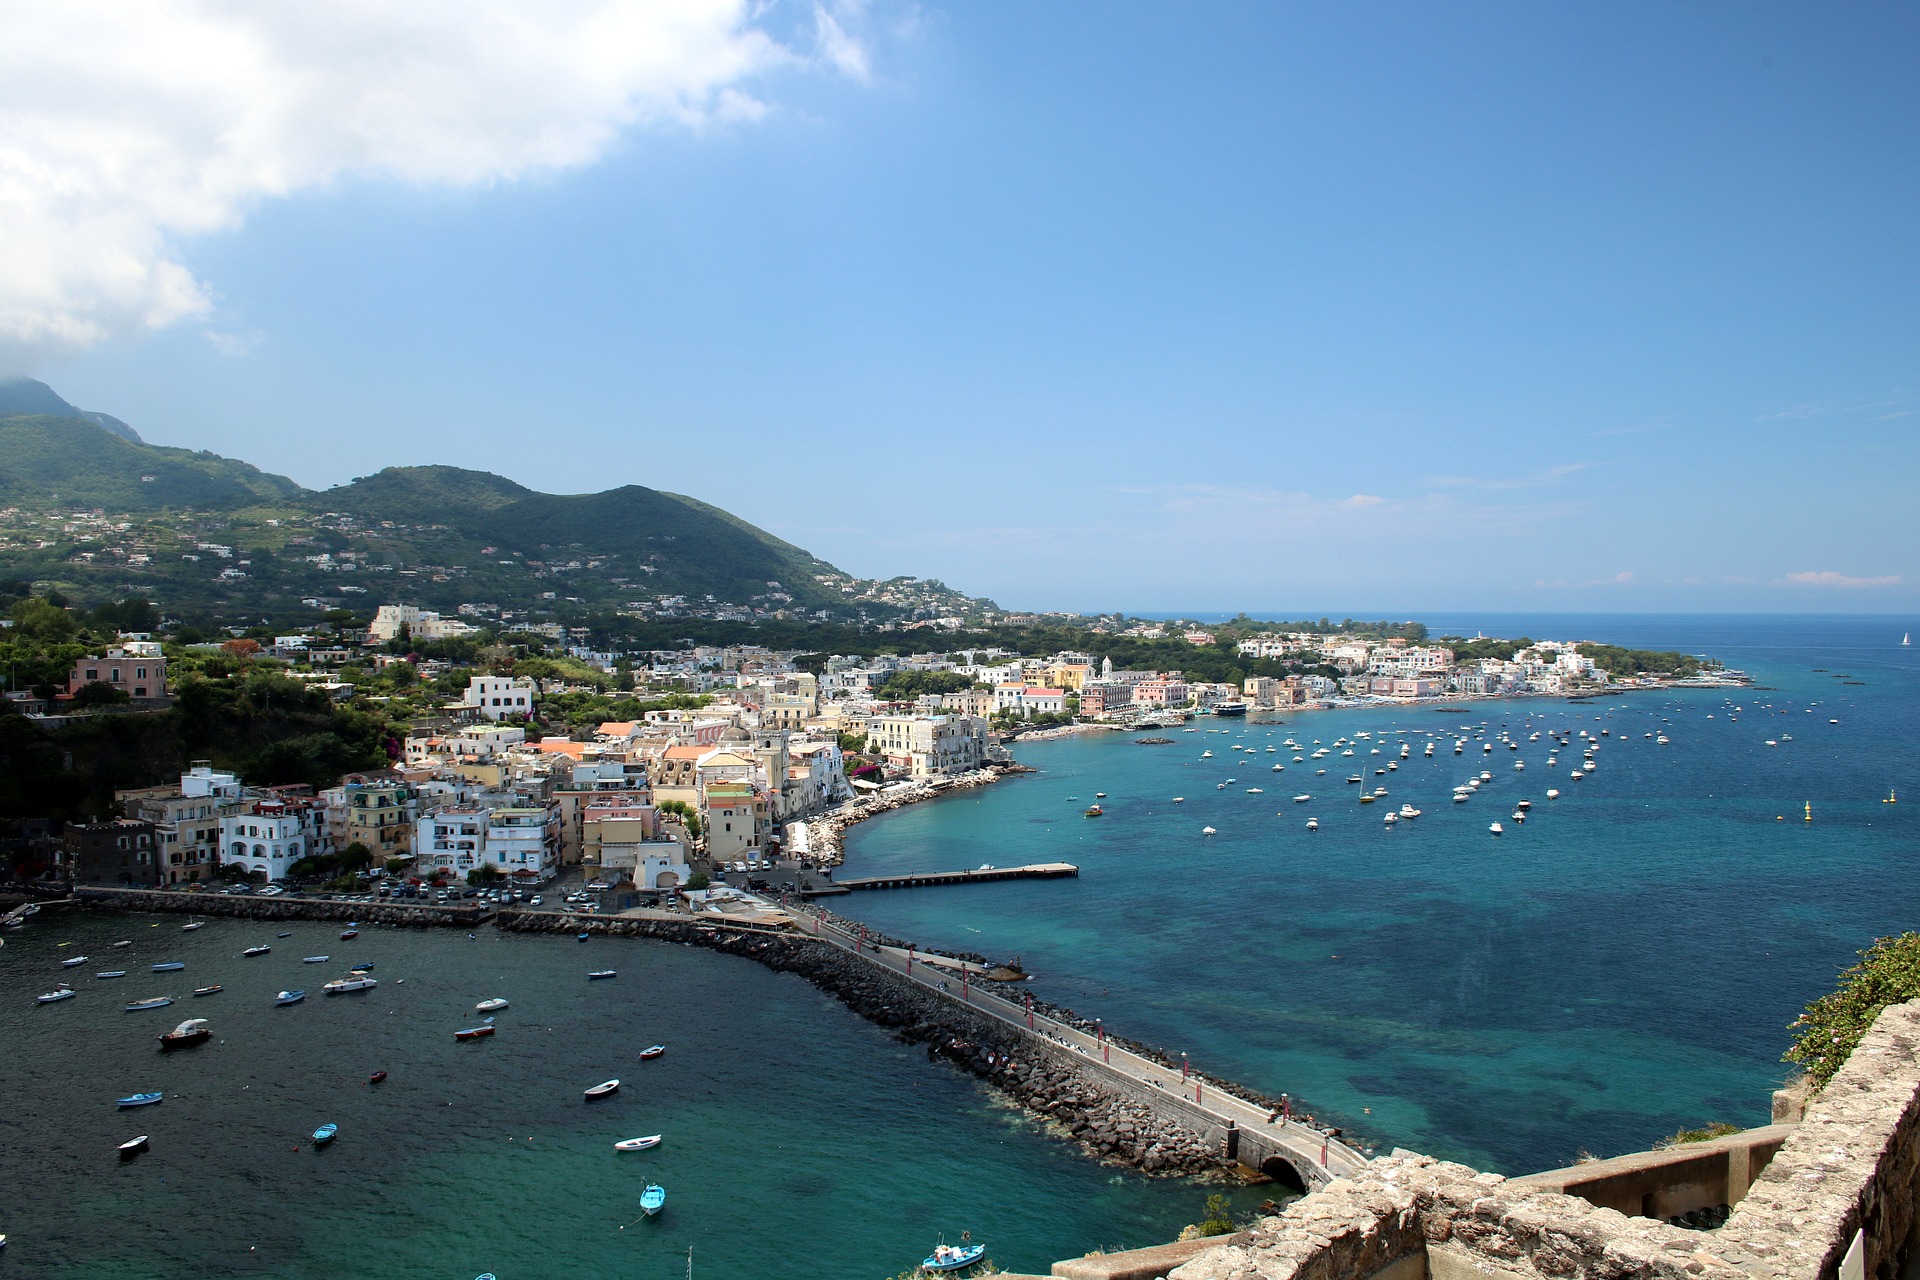 20 04 14 Amalfi Ischia Hafen